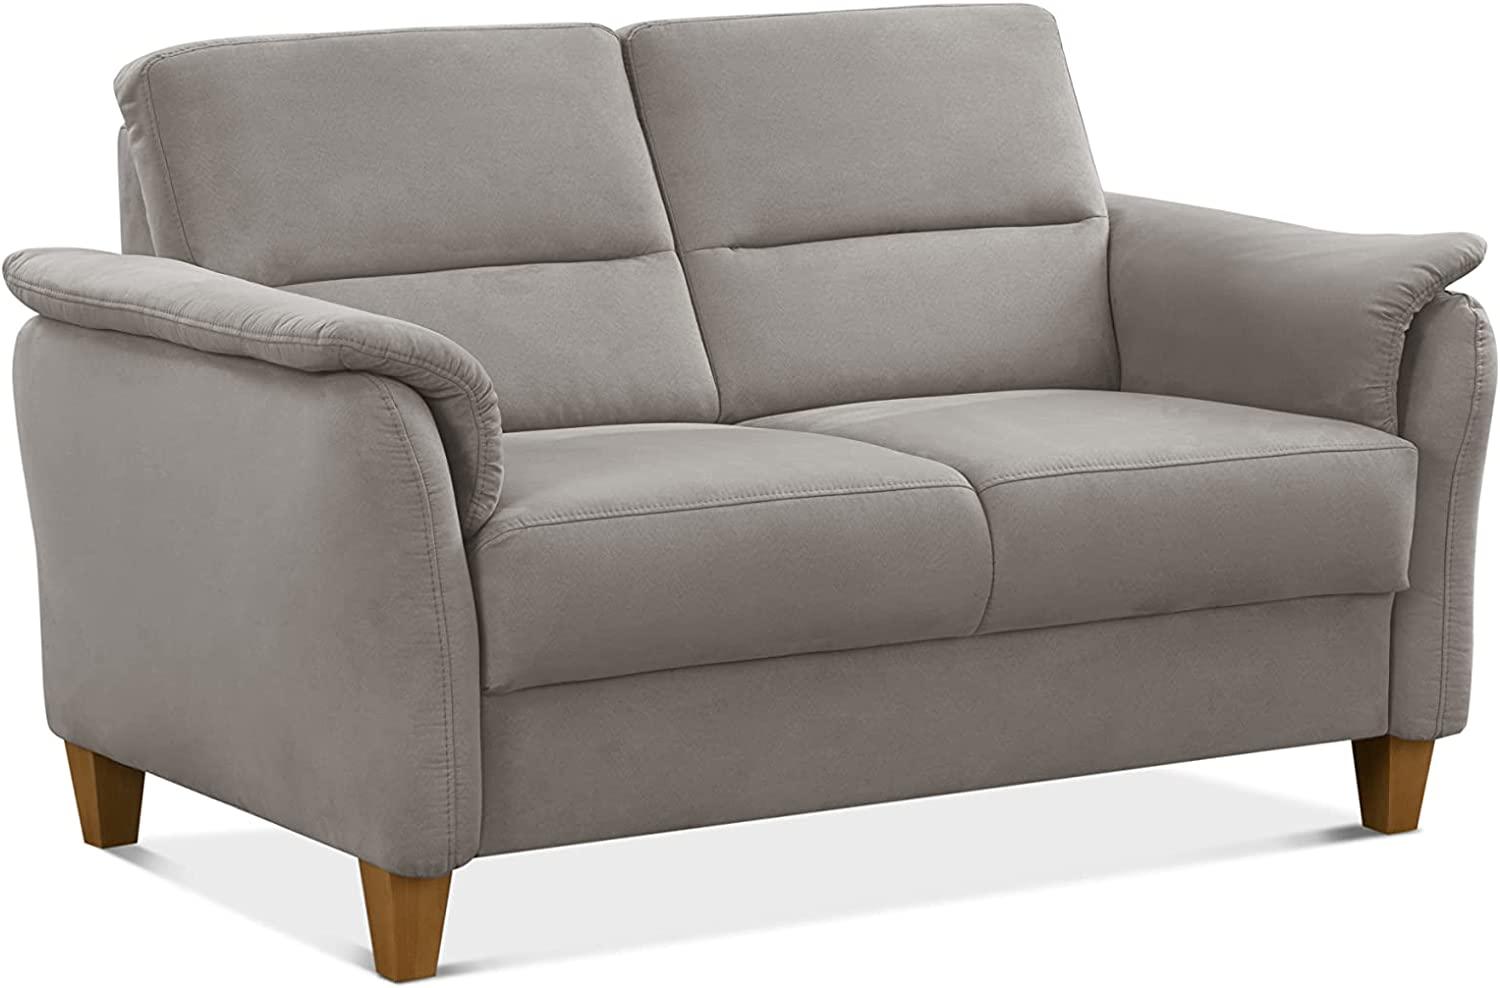 CAVADORE 2er-Sofa Palera mit Federkern / Kompakte Zweisitzer-Couch im Landhaus-Stil / passender Sessel und Hocker optional / 149 x 89 x 89 / Mikrofaser, Hellgrau Bild 1